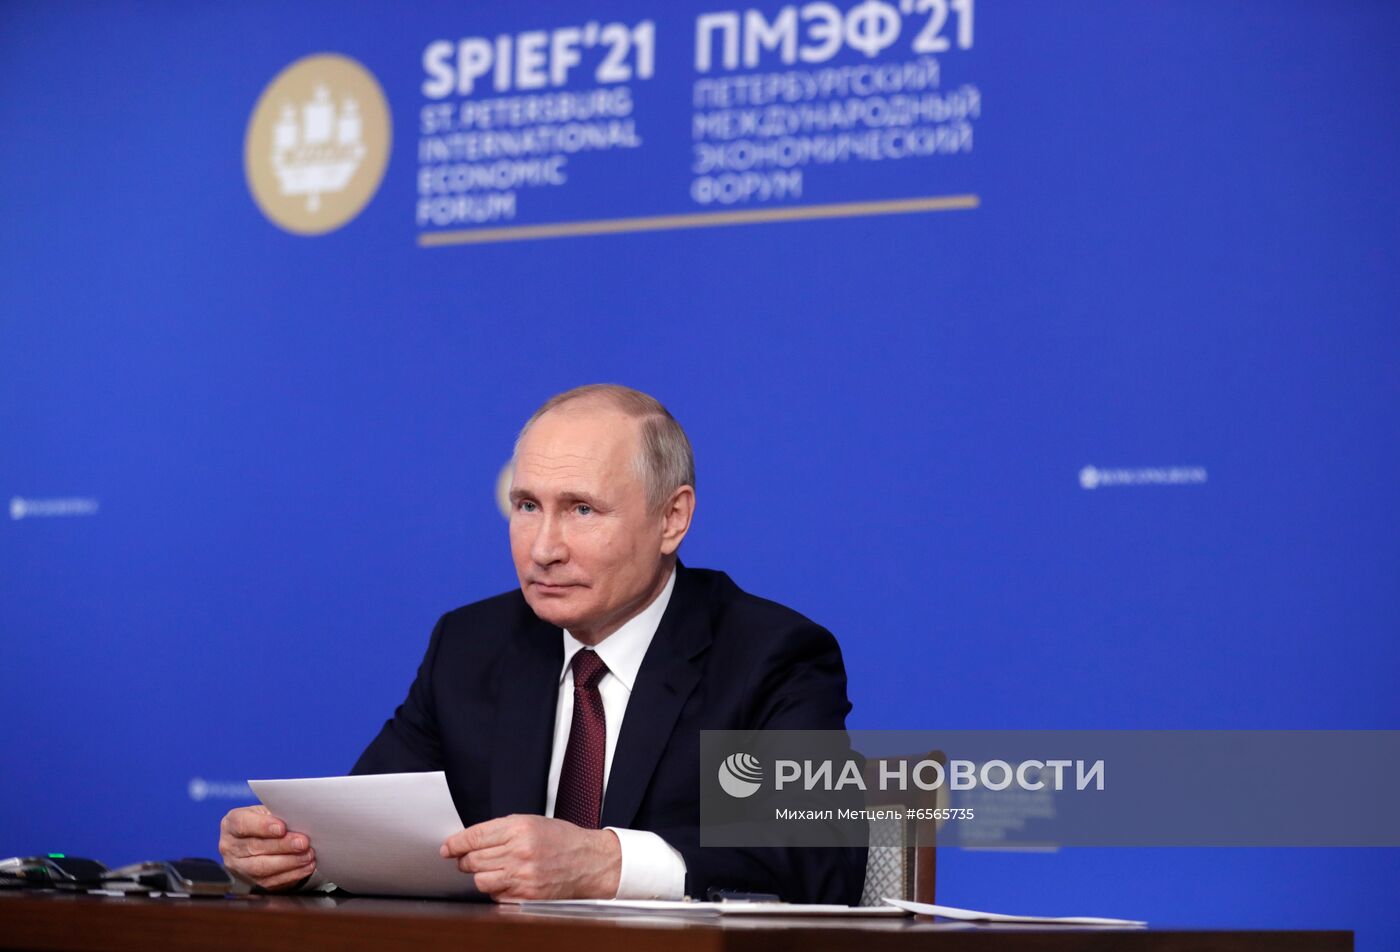 Президент РФ В. Путин провел встречу в режиме видеоконференции с руководителями крупнейших иностранных компаний